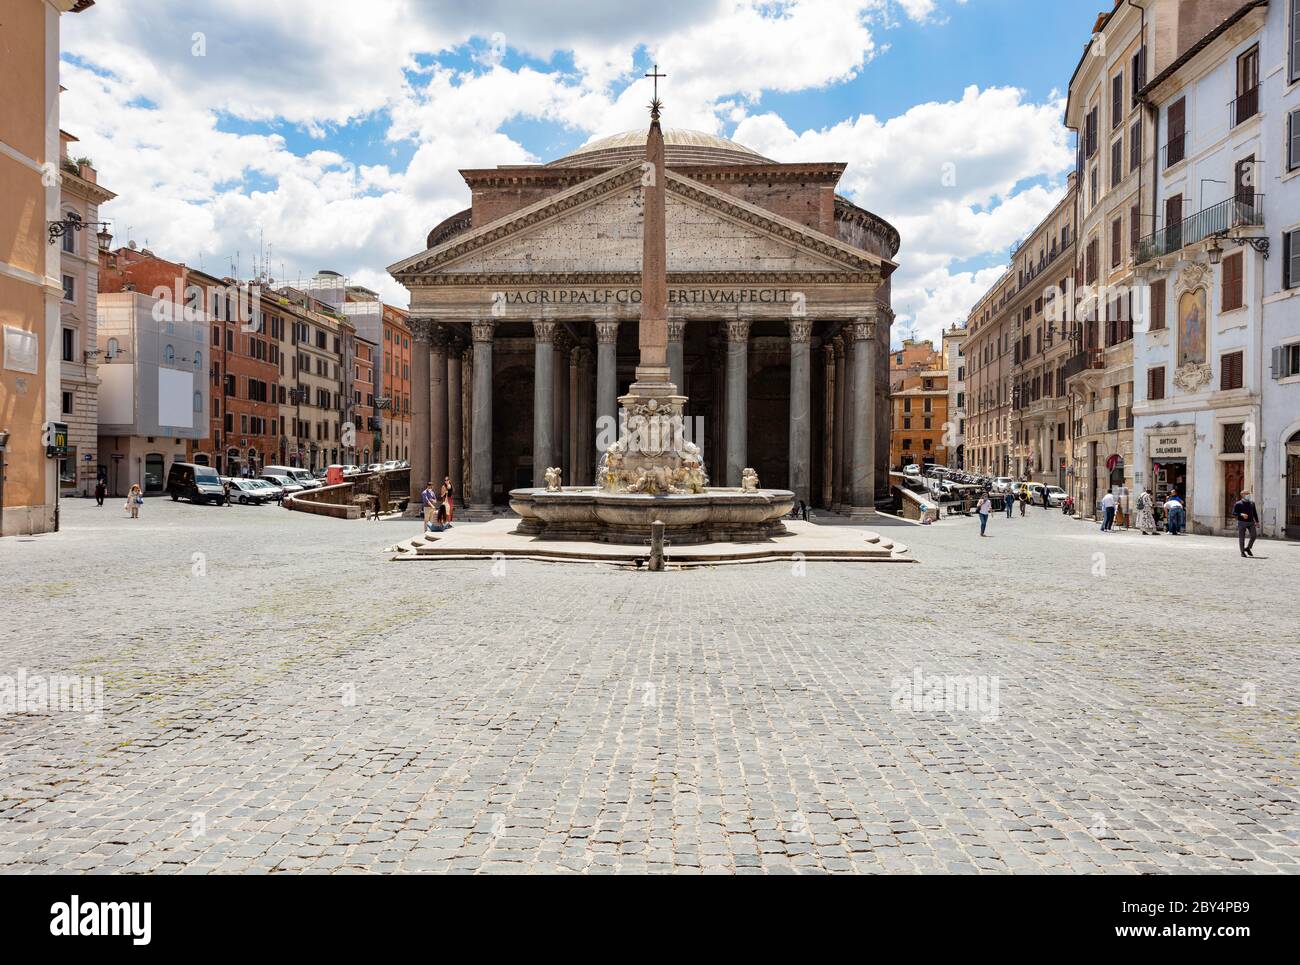 L'antica facciata romana del Pantheon in Piazza della rotonda, vuota di turisti durante lo scoppio del Covid-19. Foto Stock